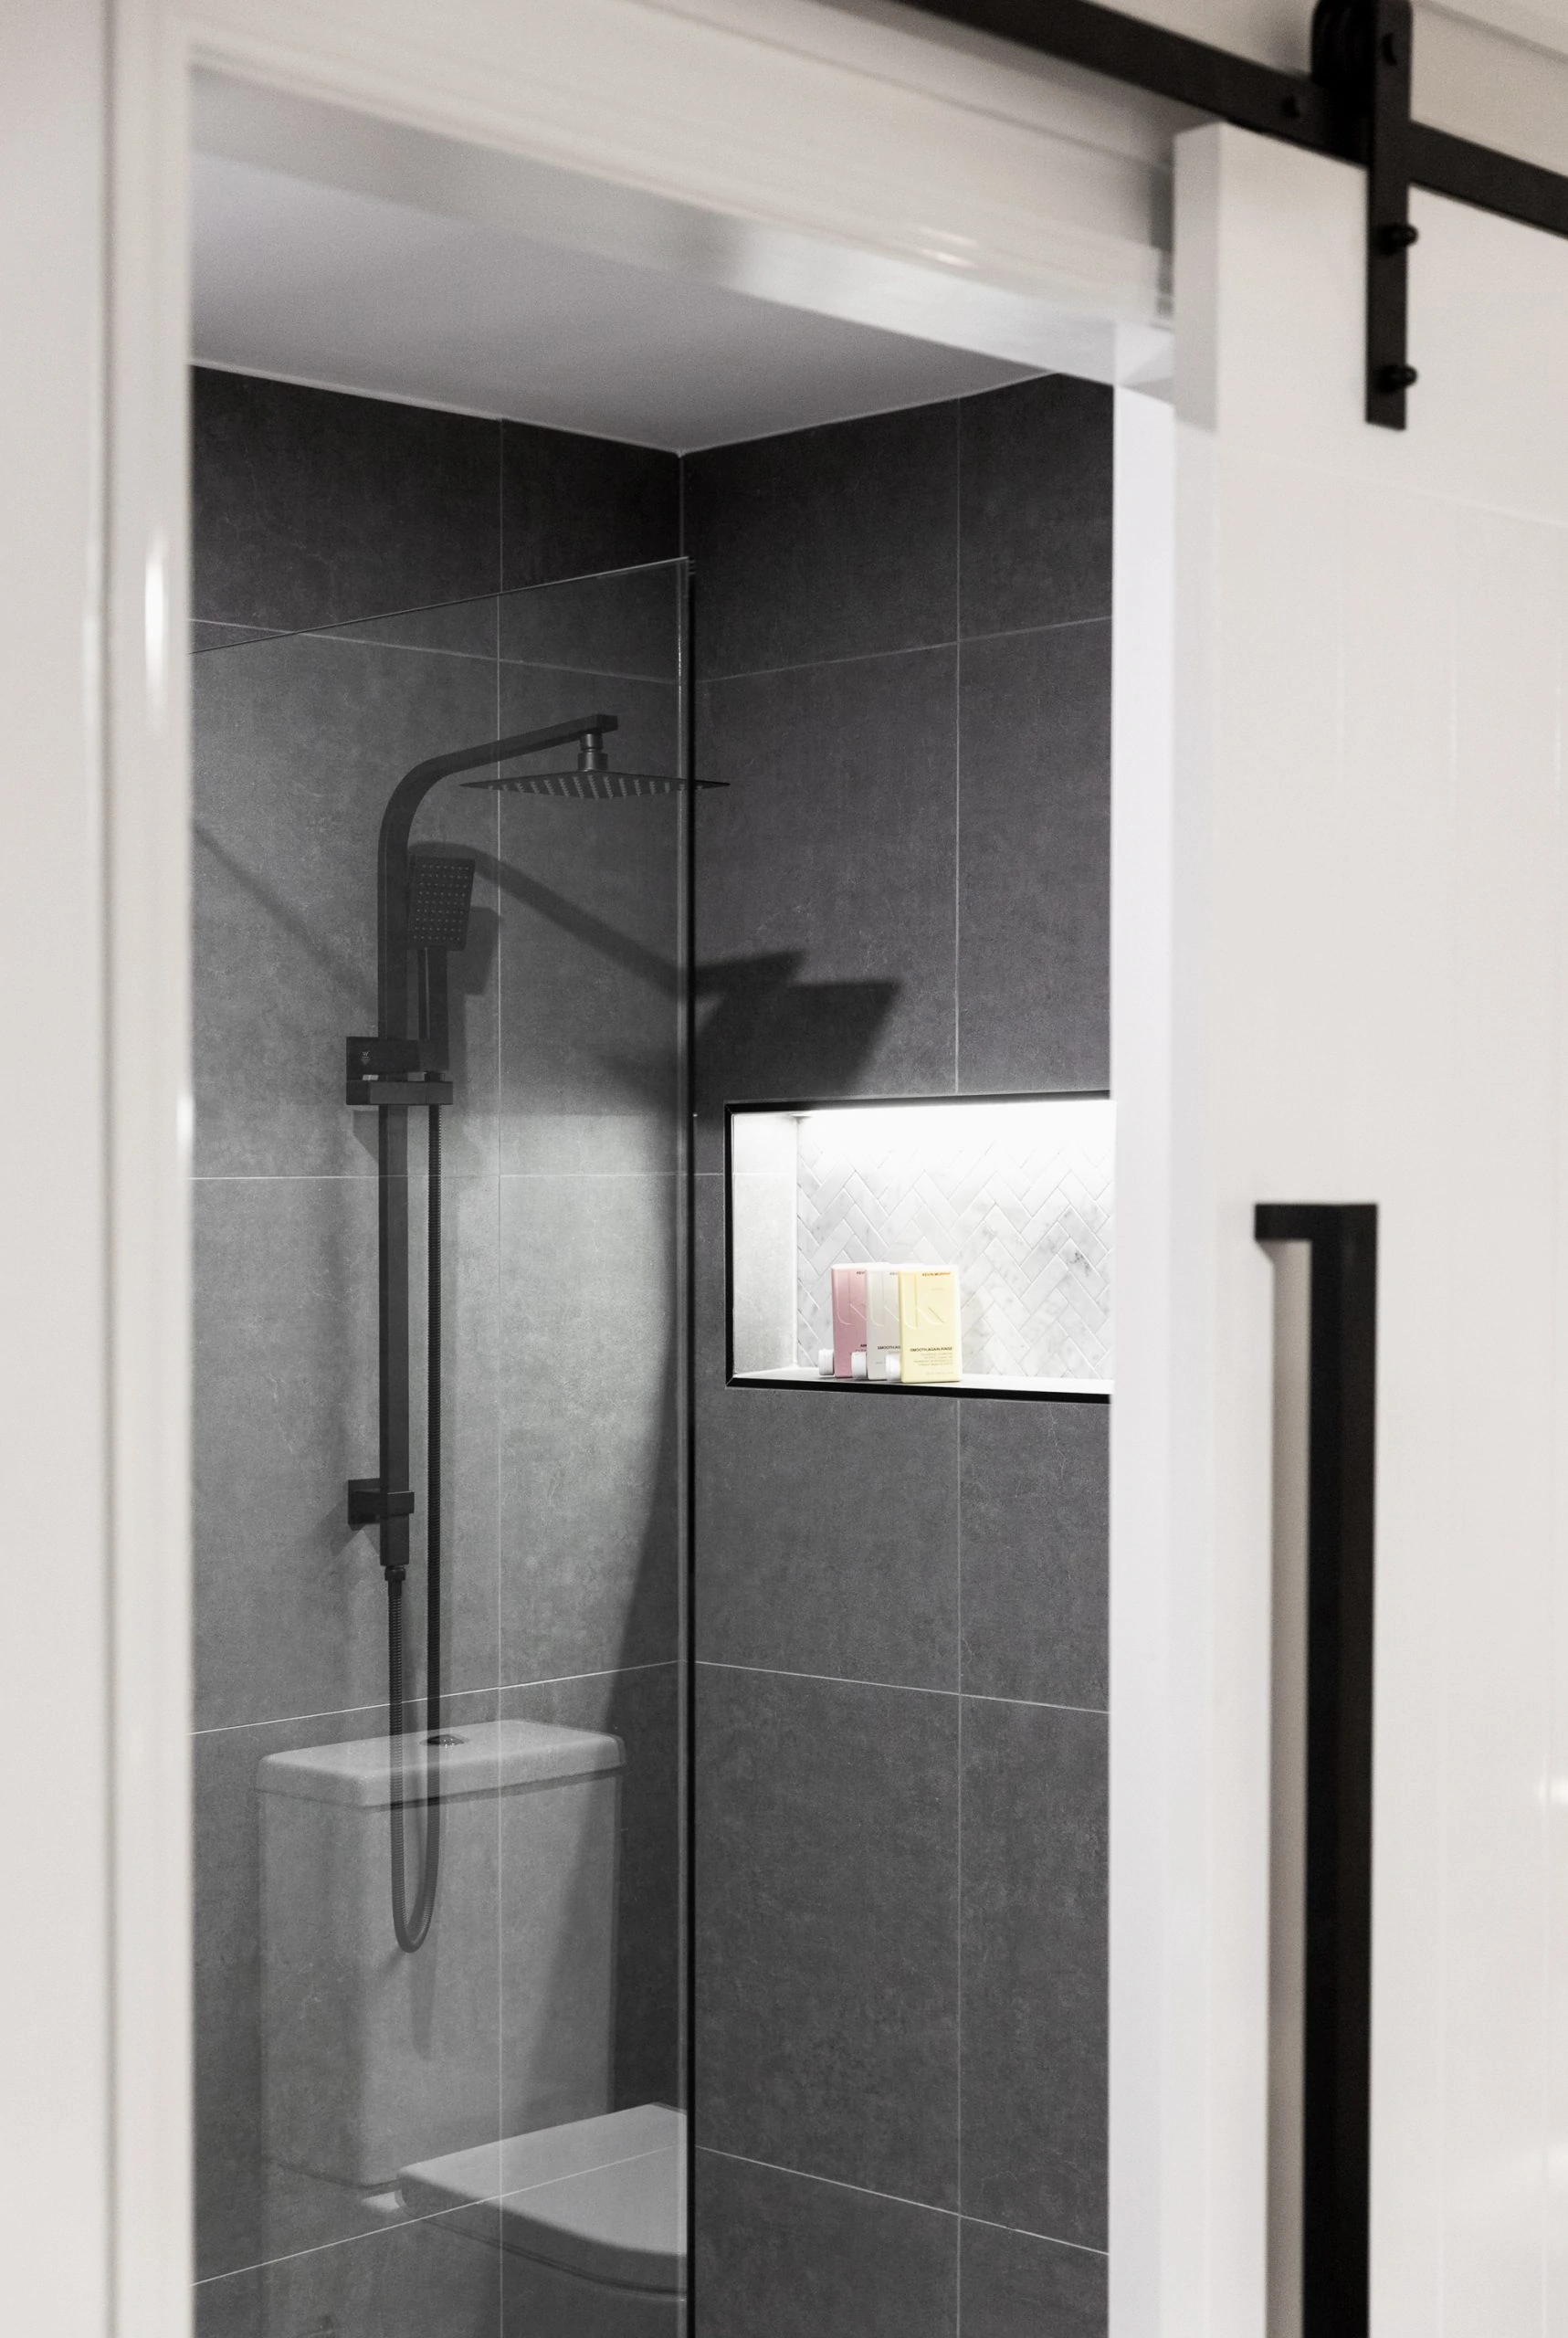 Door open to reveal a modern dark grey bathroom